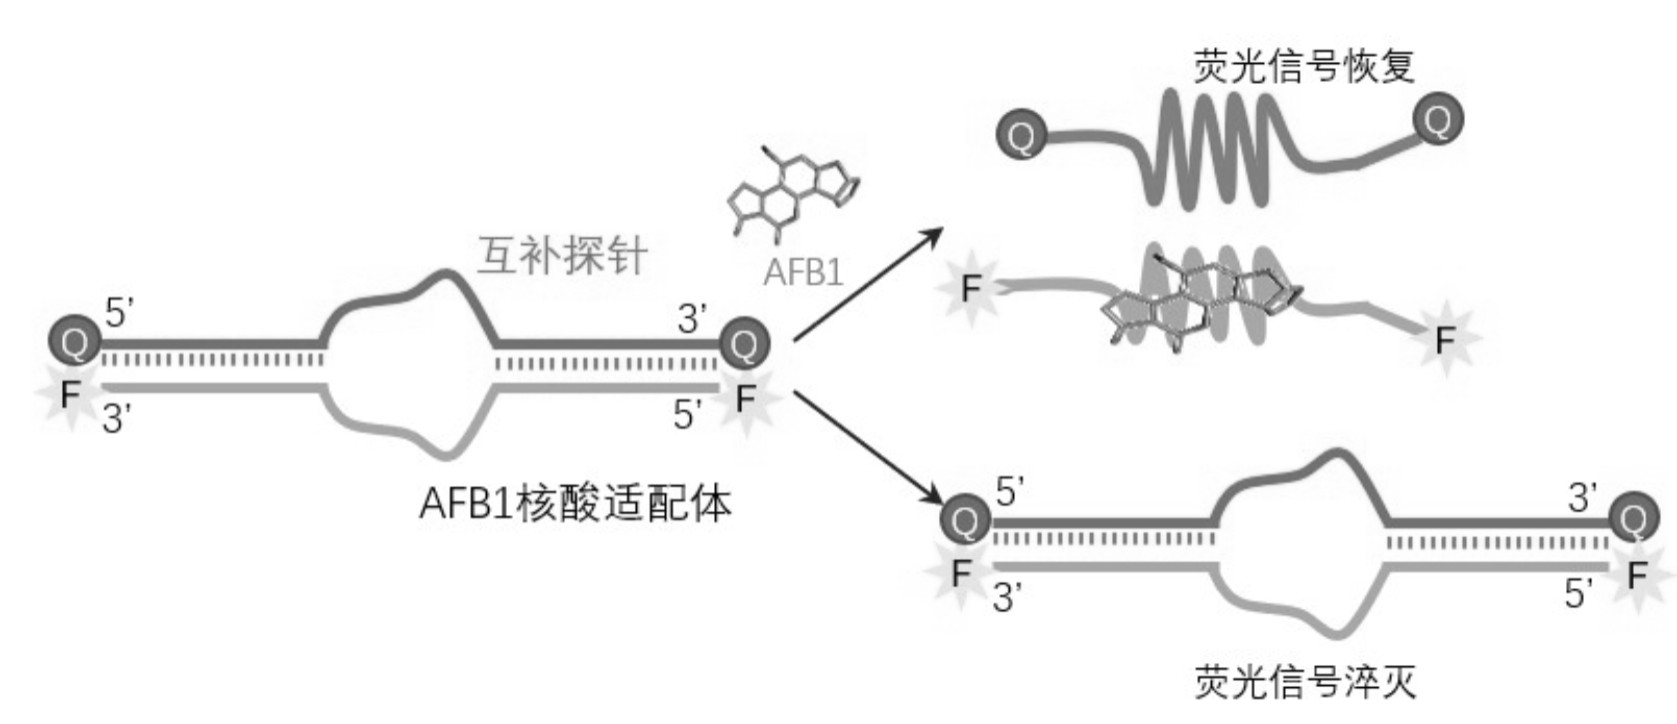 cn109406475a_双标记快速响应核酸适配体探针及其检测黄曲霉毒素b1的